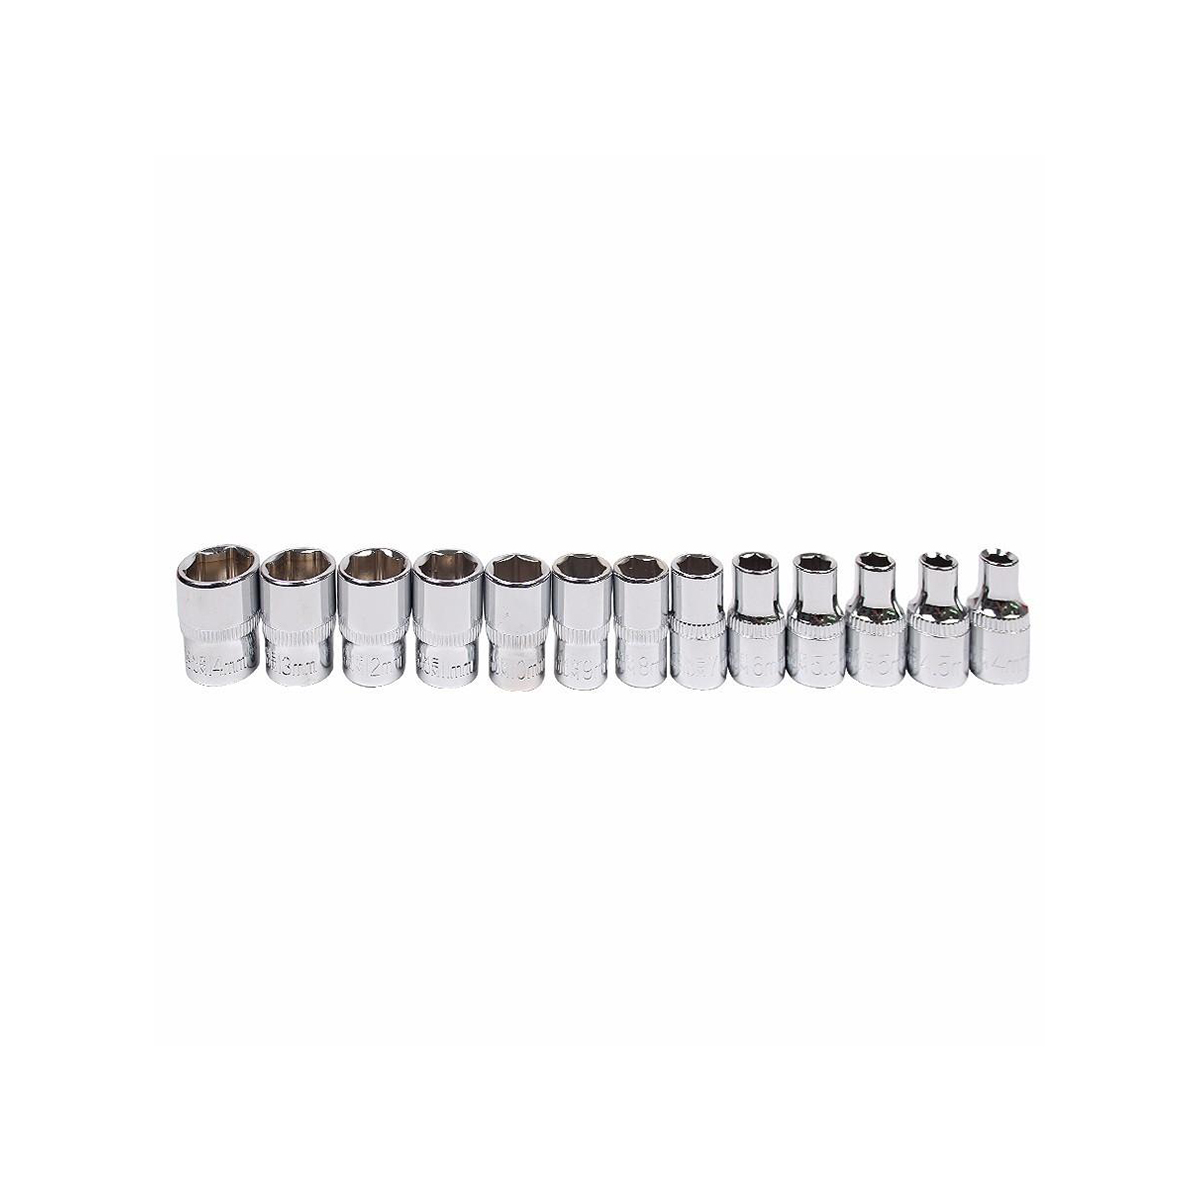 46 peças 1/4' dr crv aço métrico caixa de ferramentas para reparo de carro conjunto de ferramentas chave soquete com cabo de catraca